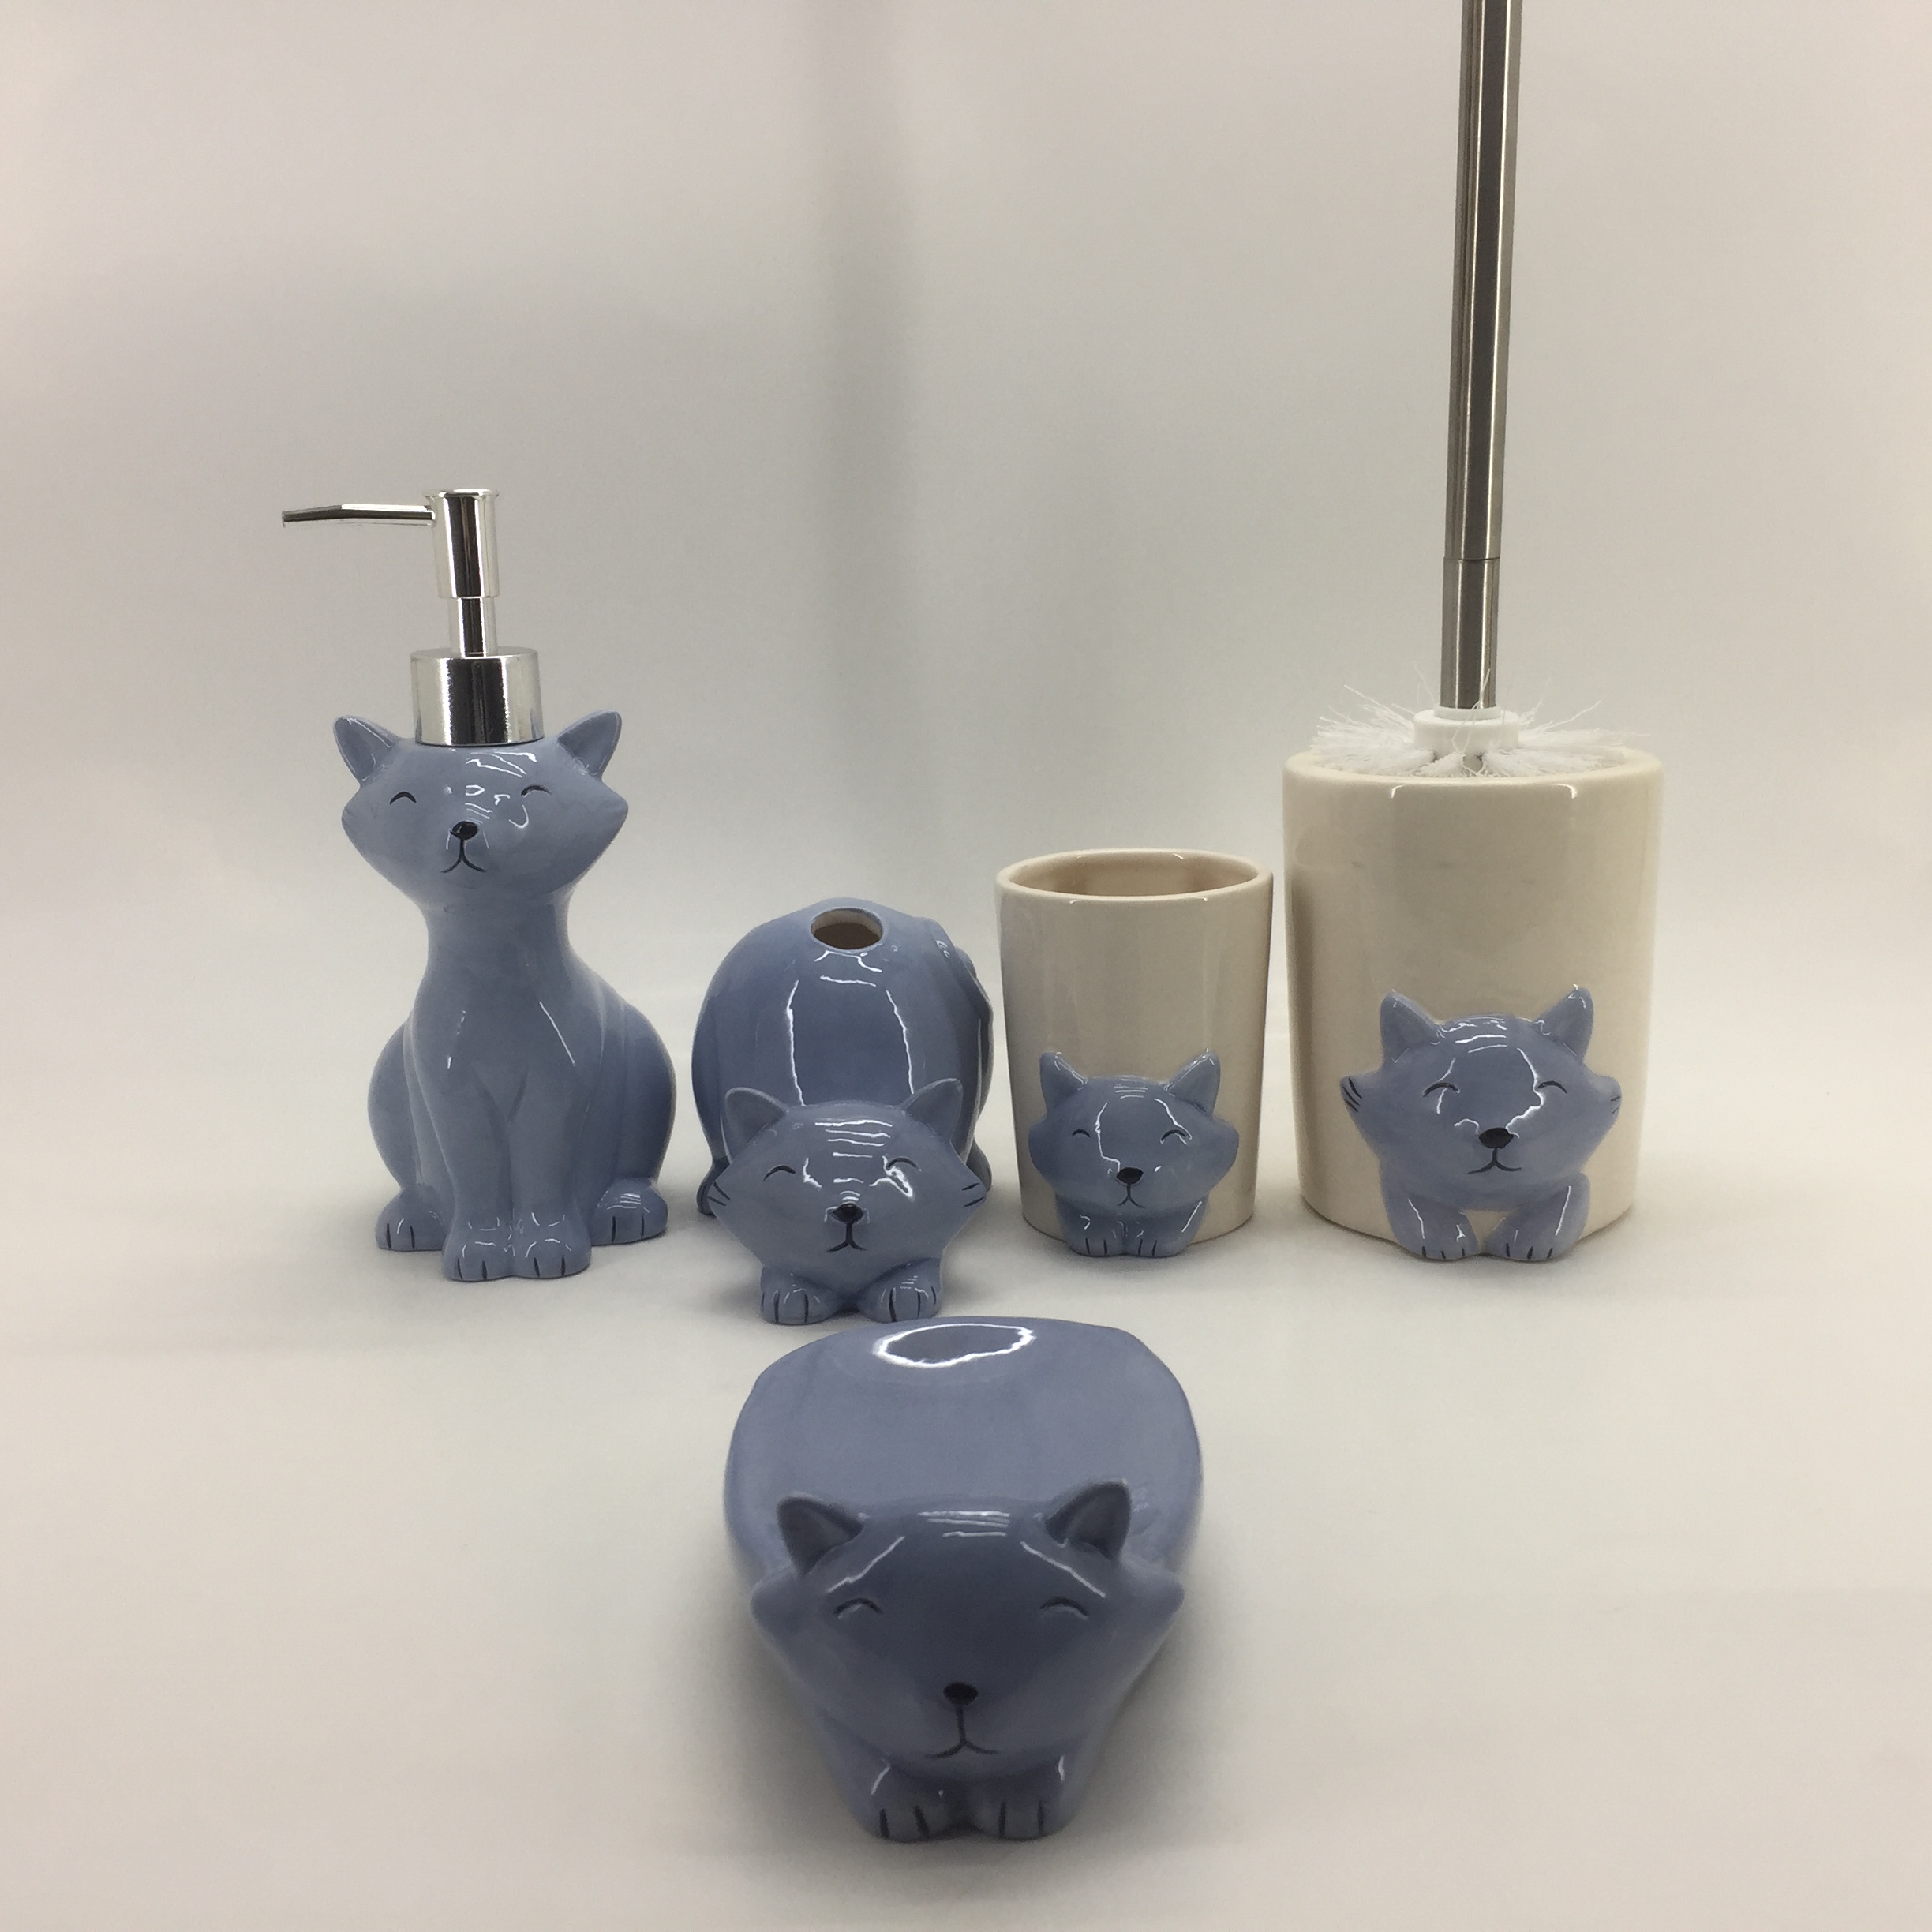 Lovely Cat Ceramic Bathroom Accessories Set